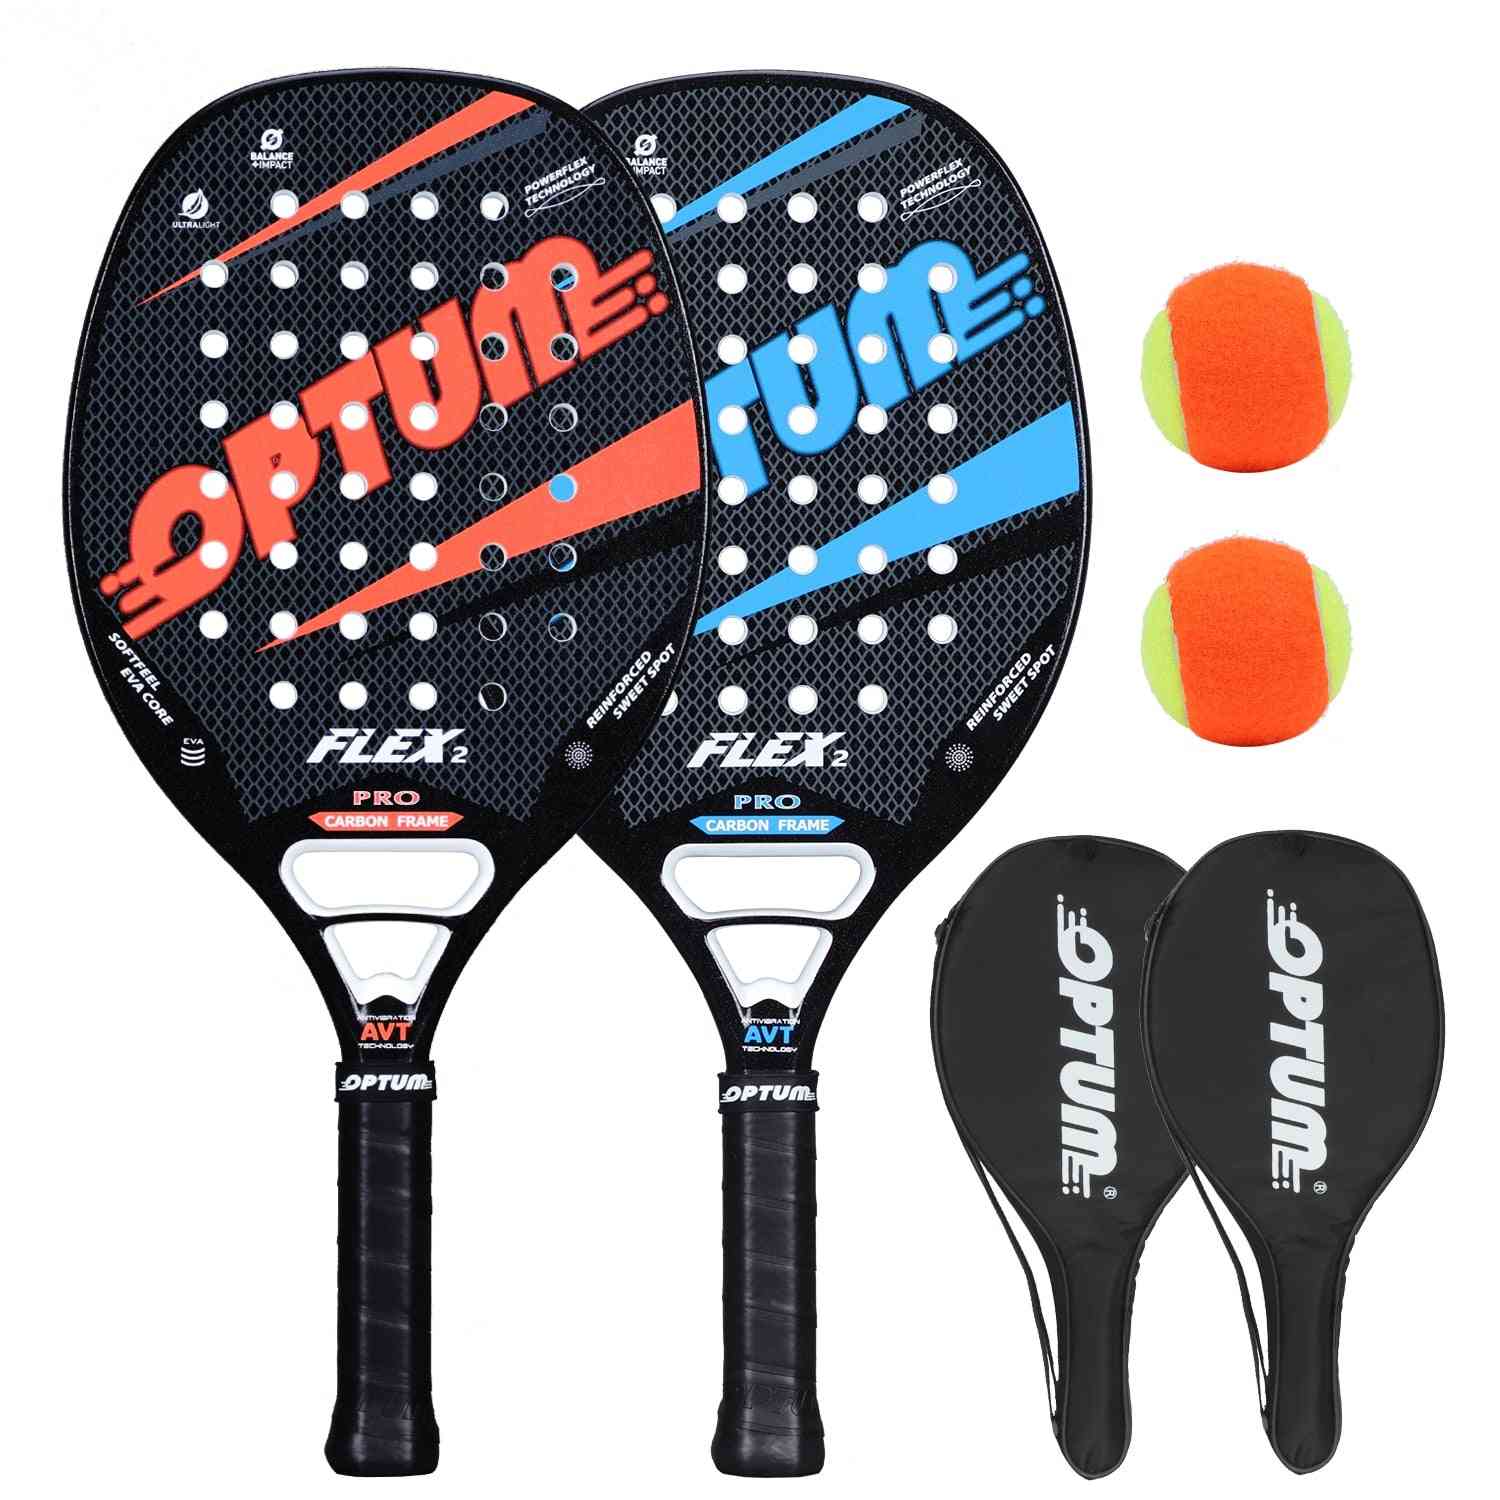 Flex2 Carbon Fiber Frame Beach Tennis Racket Set